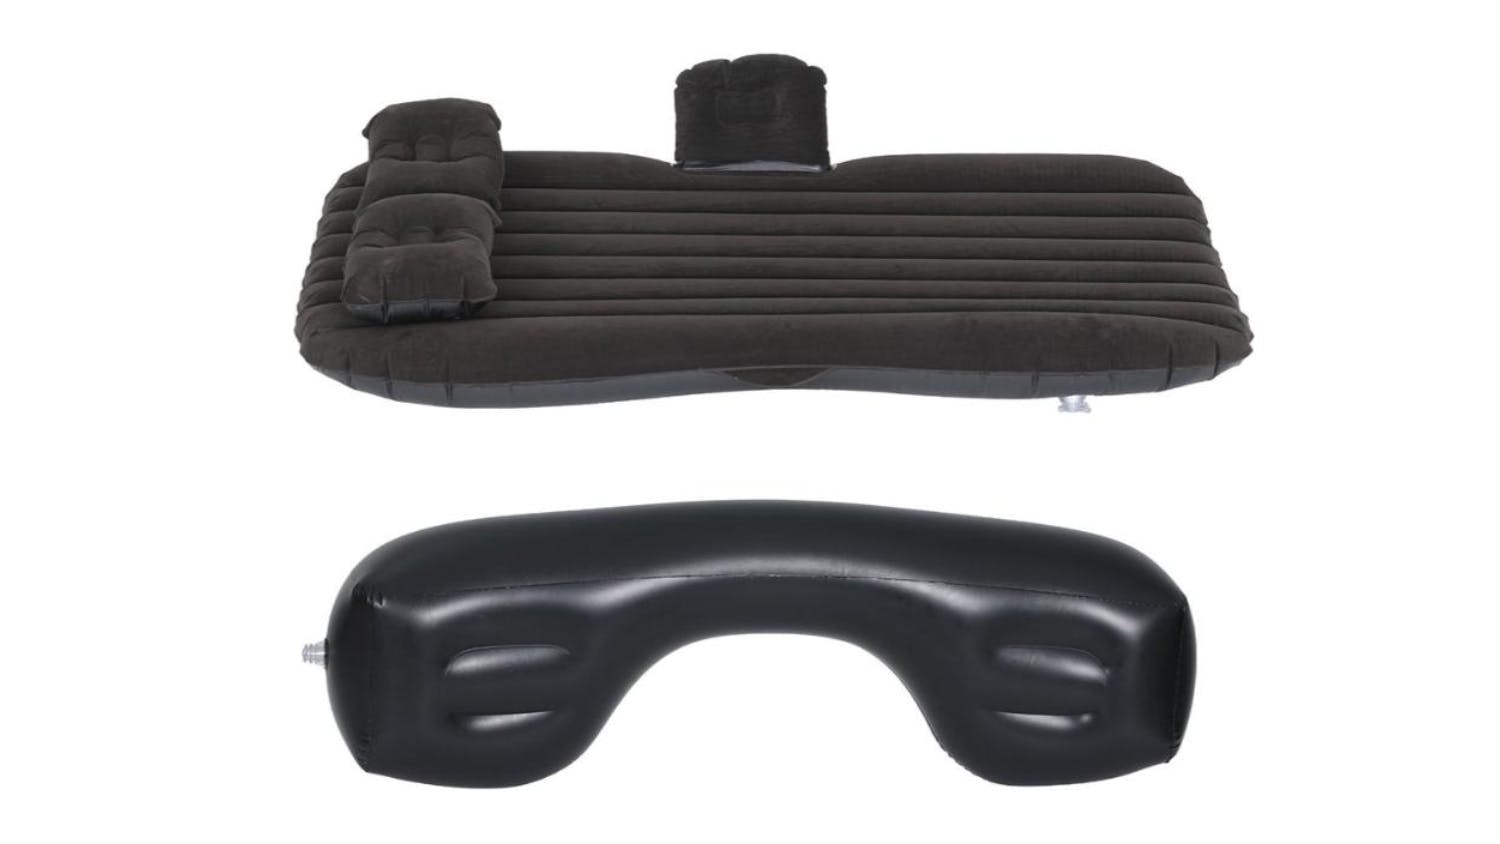 Weisshorn Inflatable Car Mattress 134 x 78cm - Black